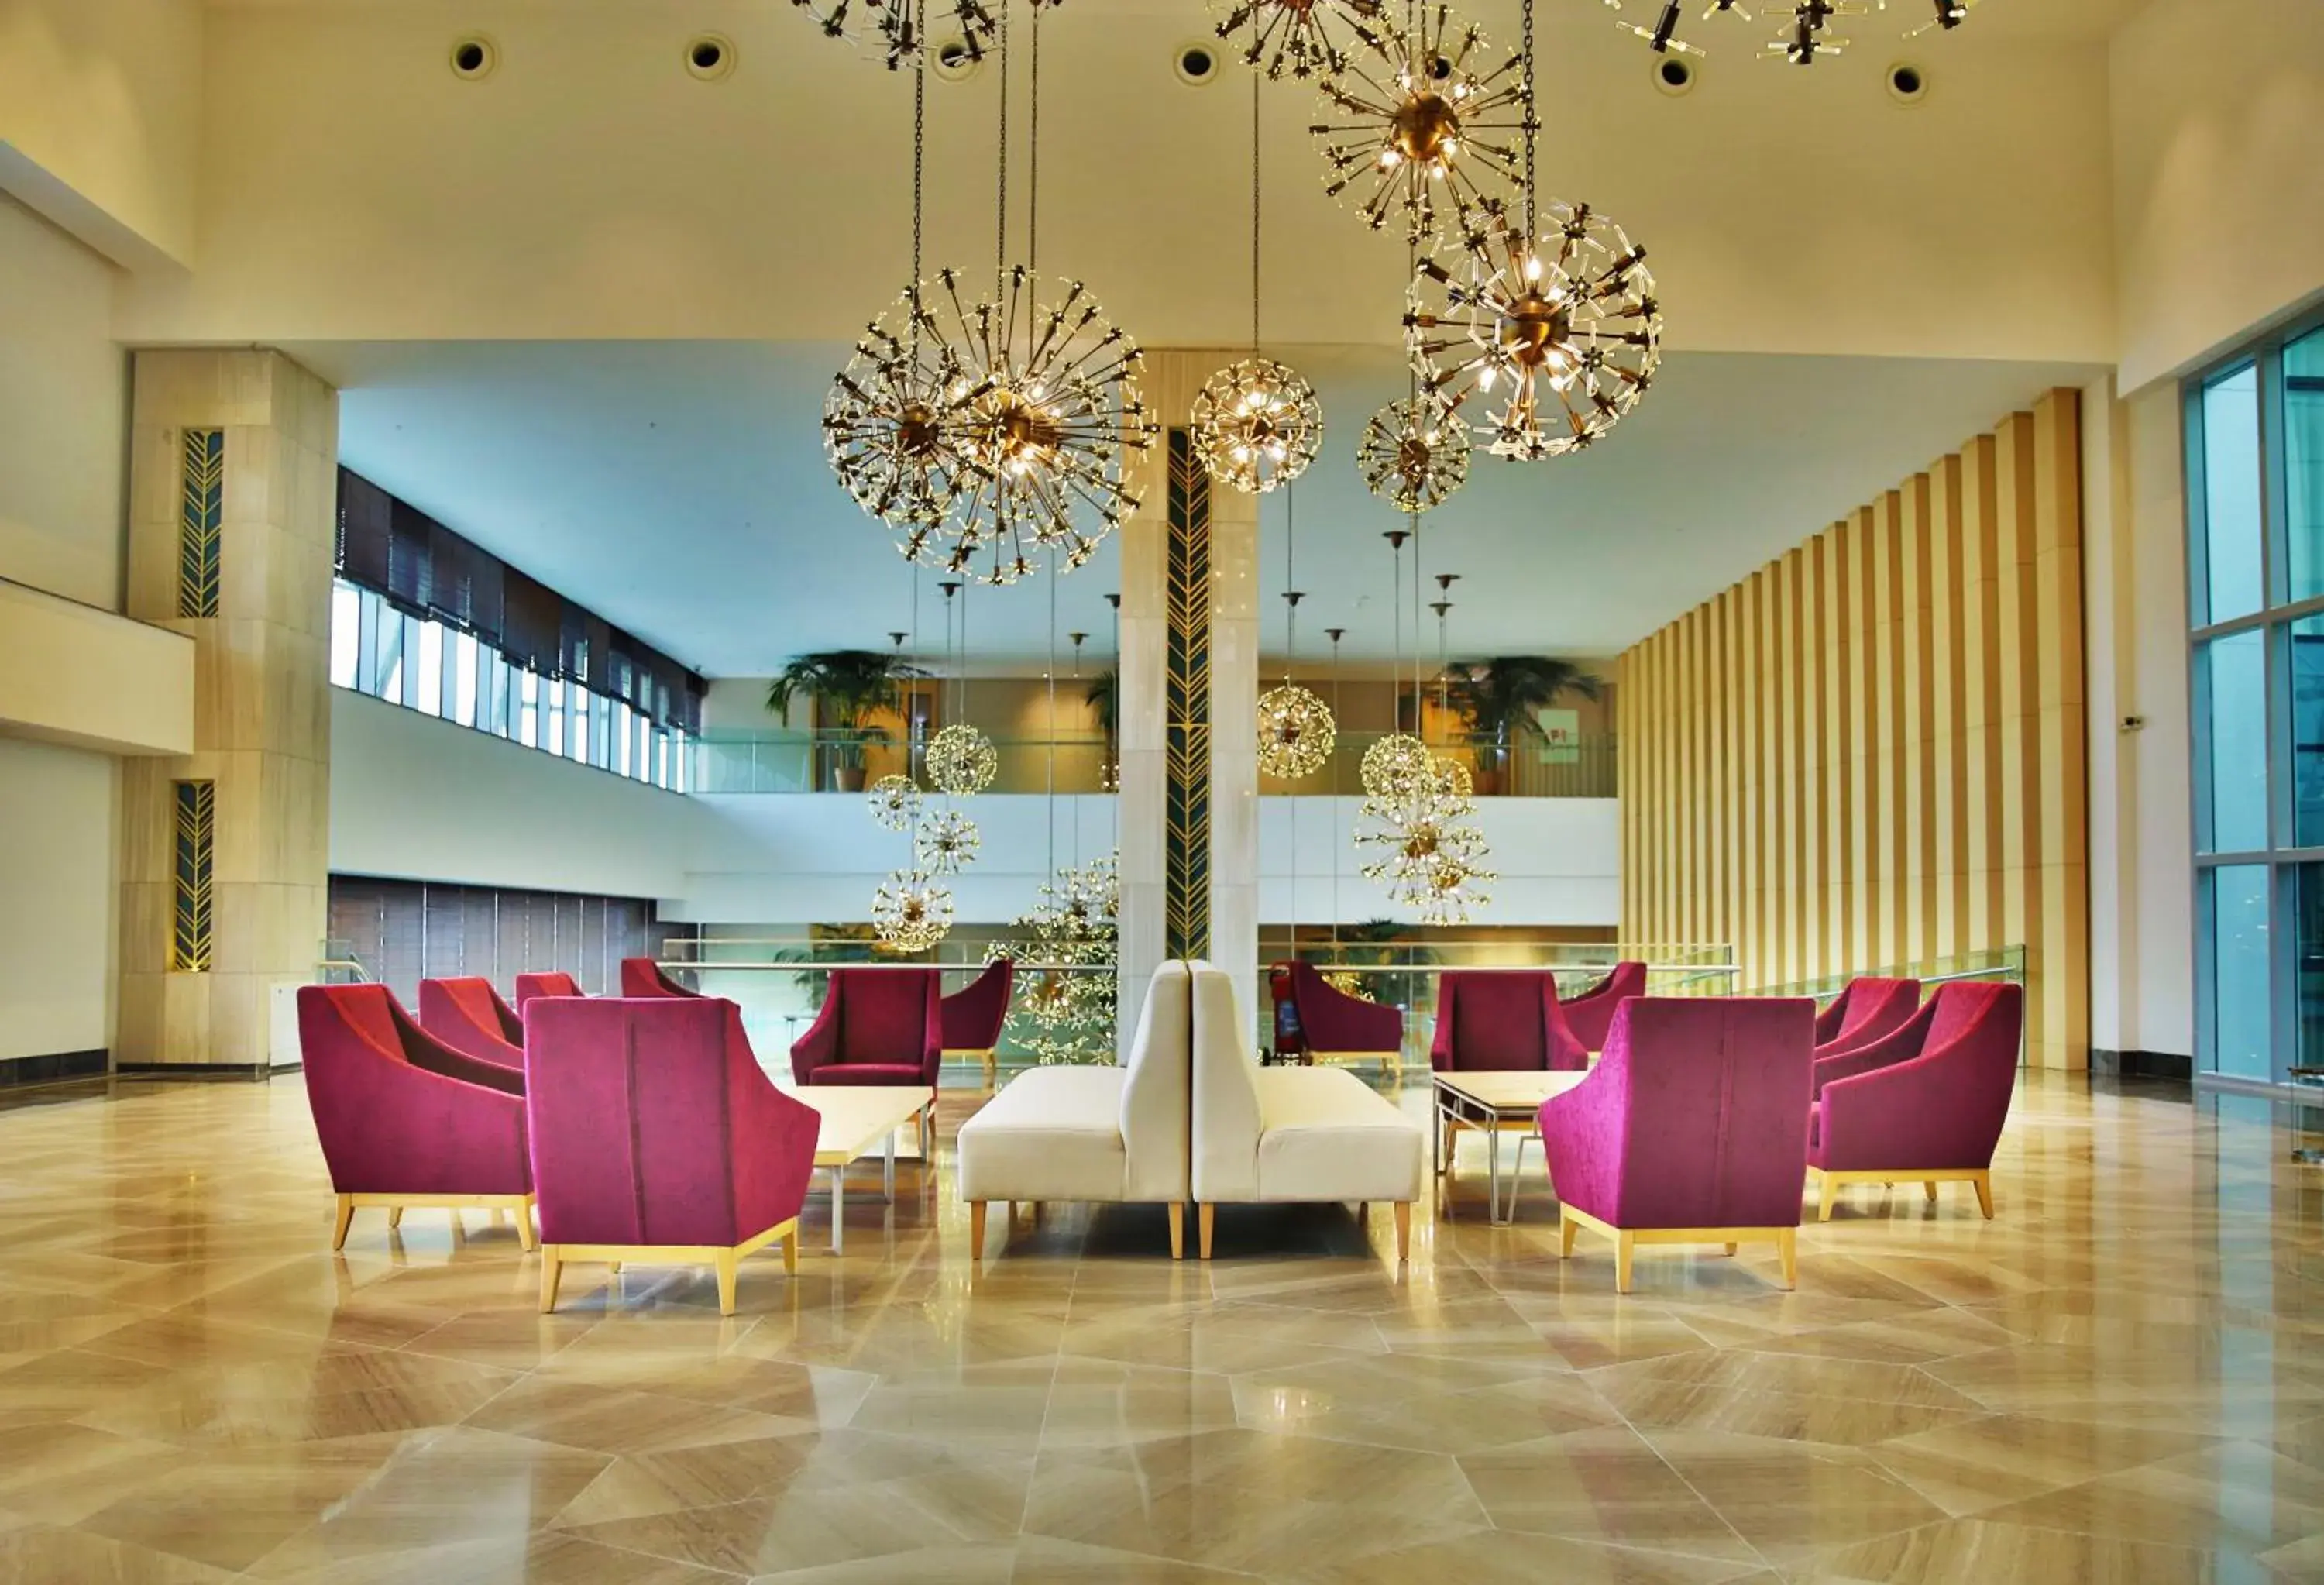 Lobby or reception in The Ankara Hotel